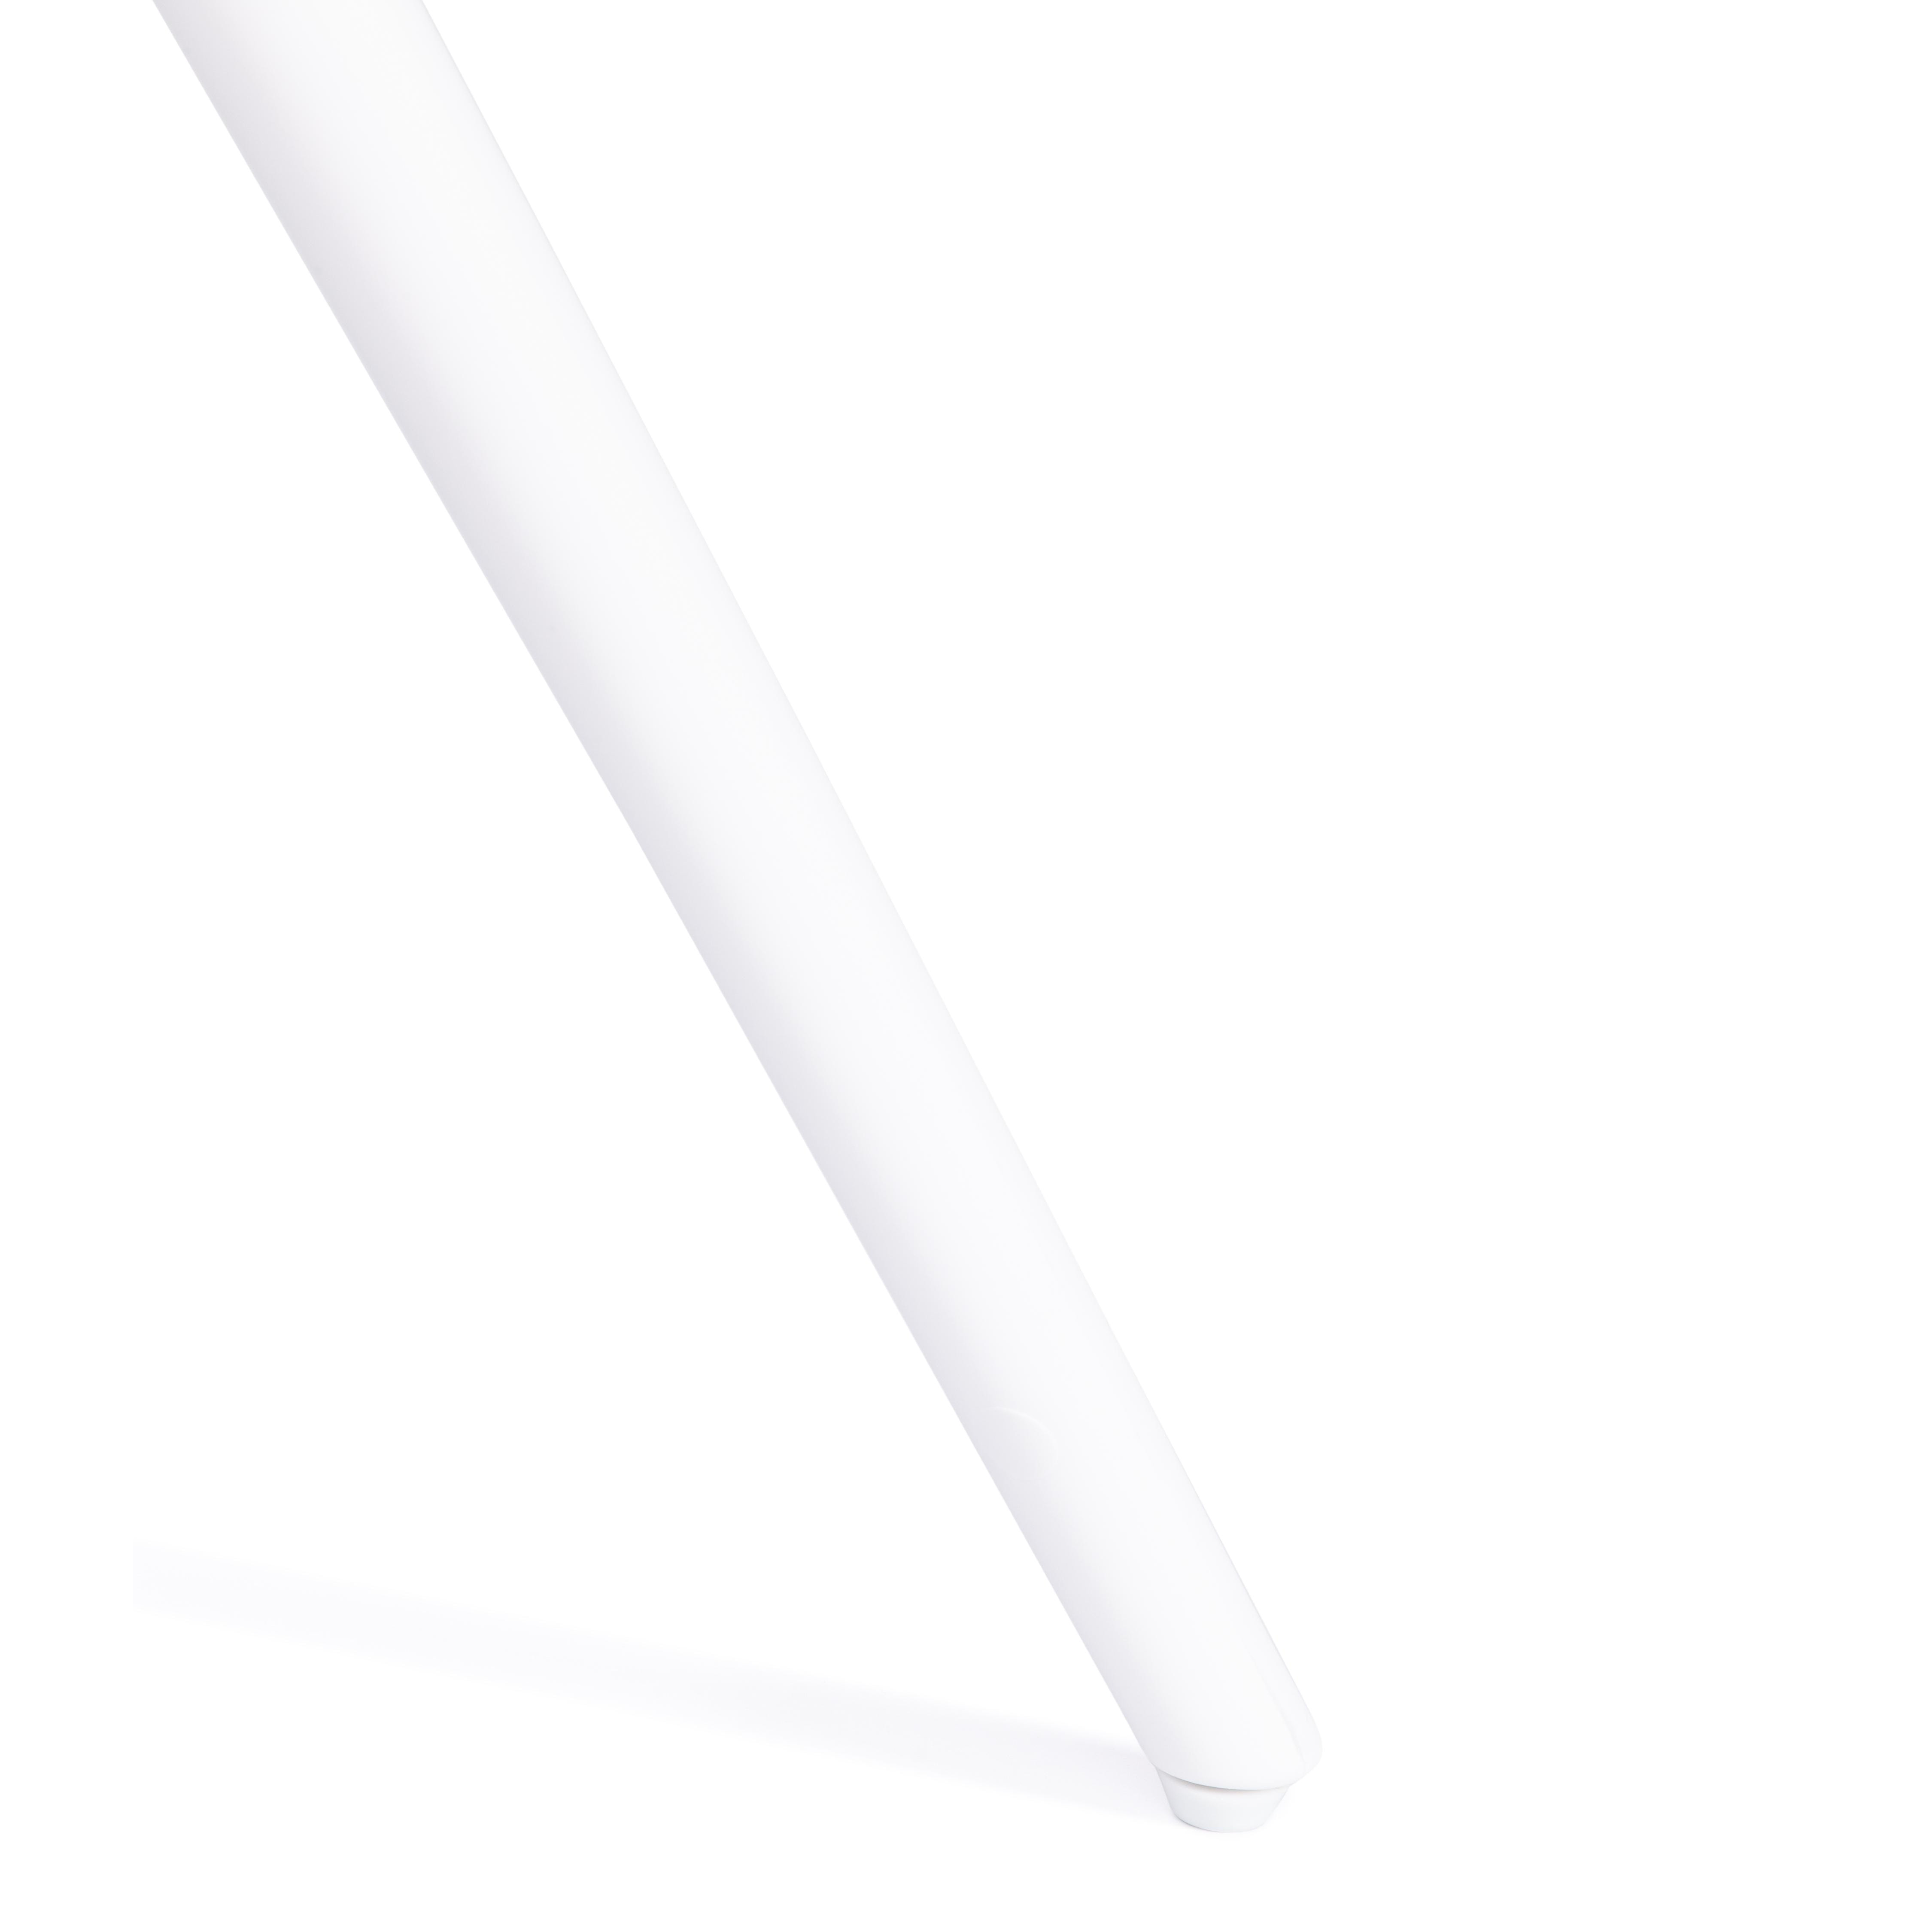 Стол PARNAVAZ (mod. 29) пластик/стекло,  60 x 60 x 70,5 см, White (белый) 11954